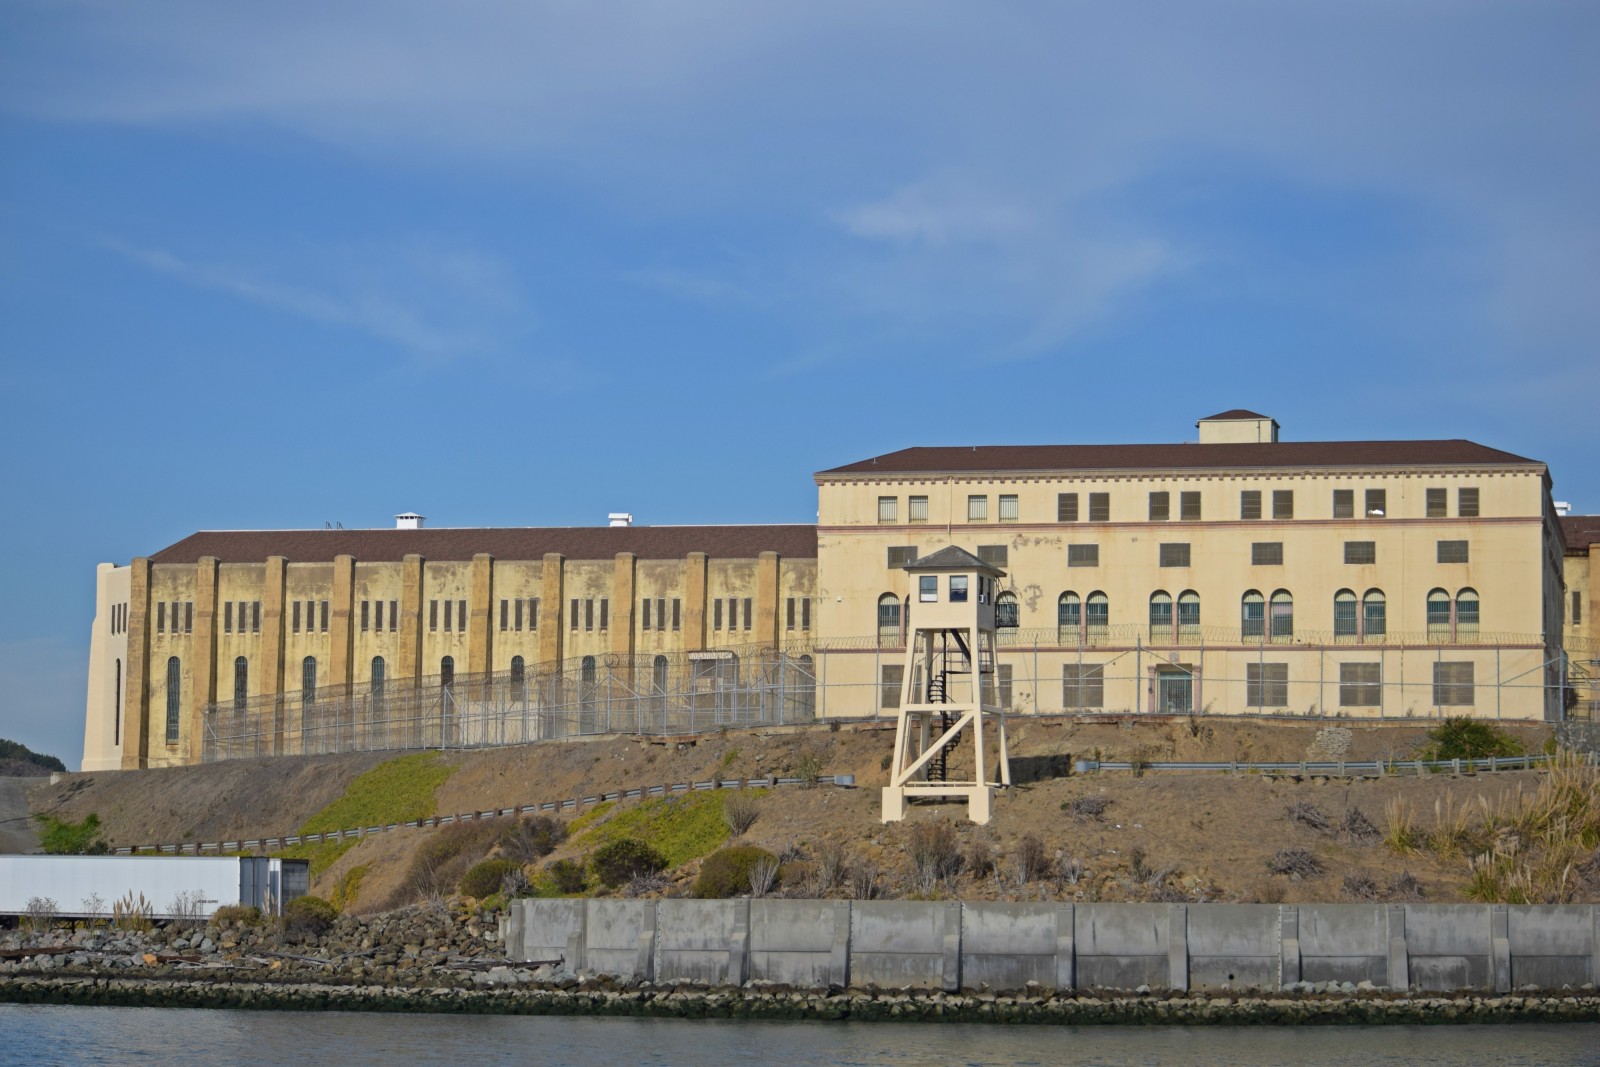 General 1600x1067 San Quentin prison USA architecture